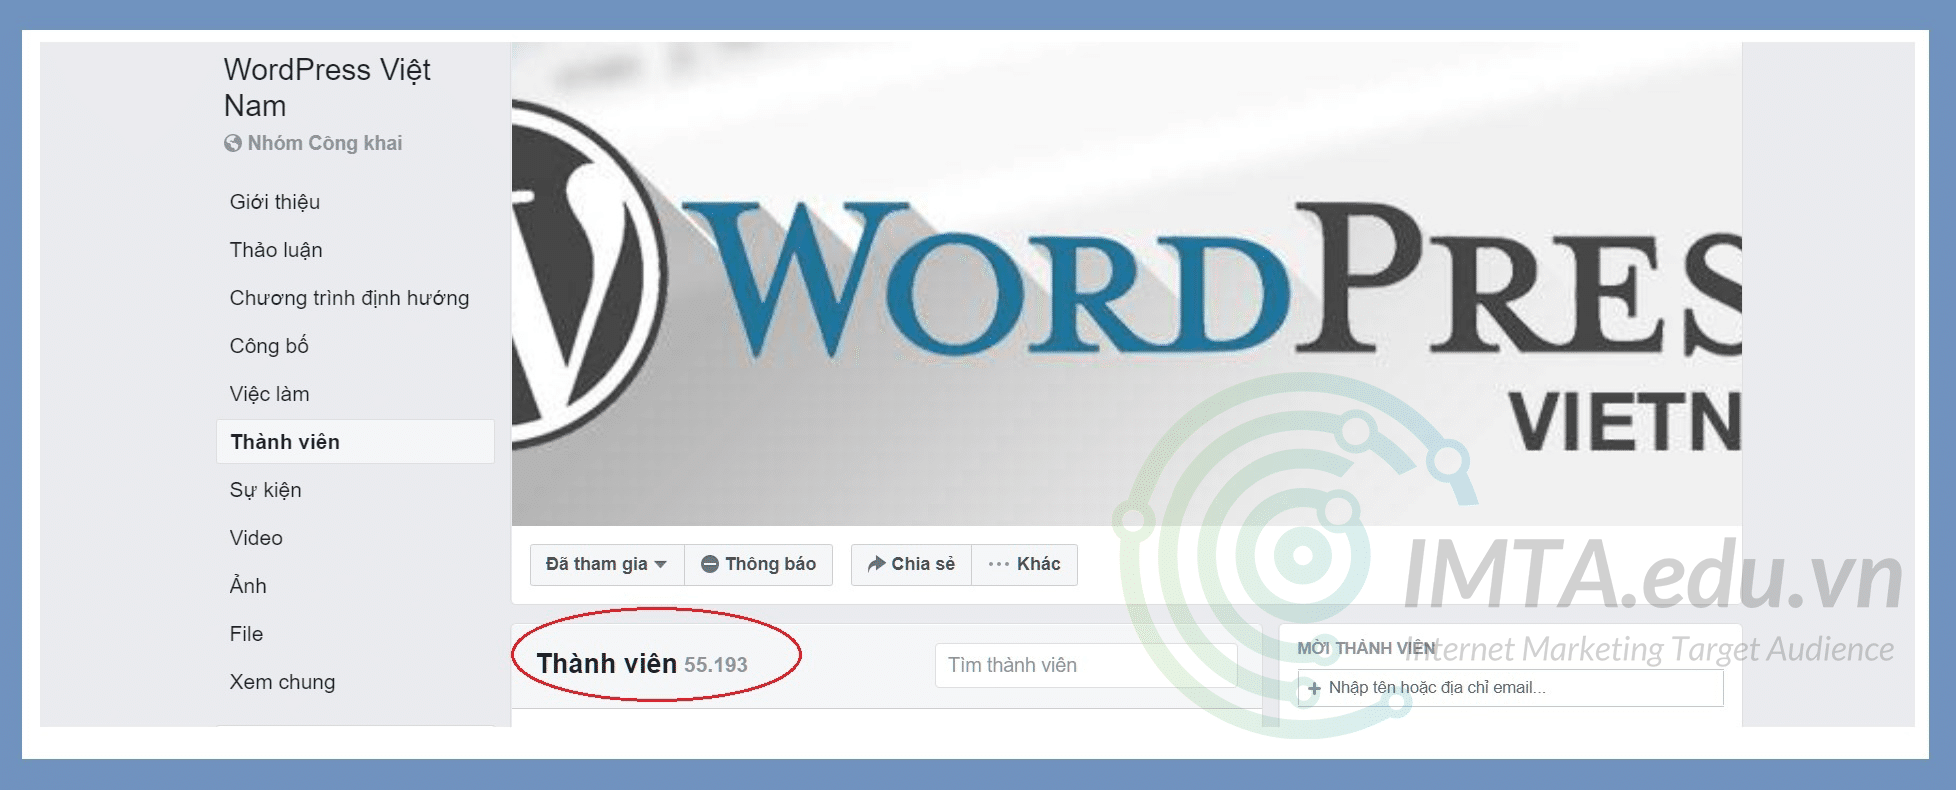 Cộng đồng WordPress Việt Nam rất lớn và hoạt động sôi nổi